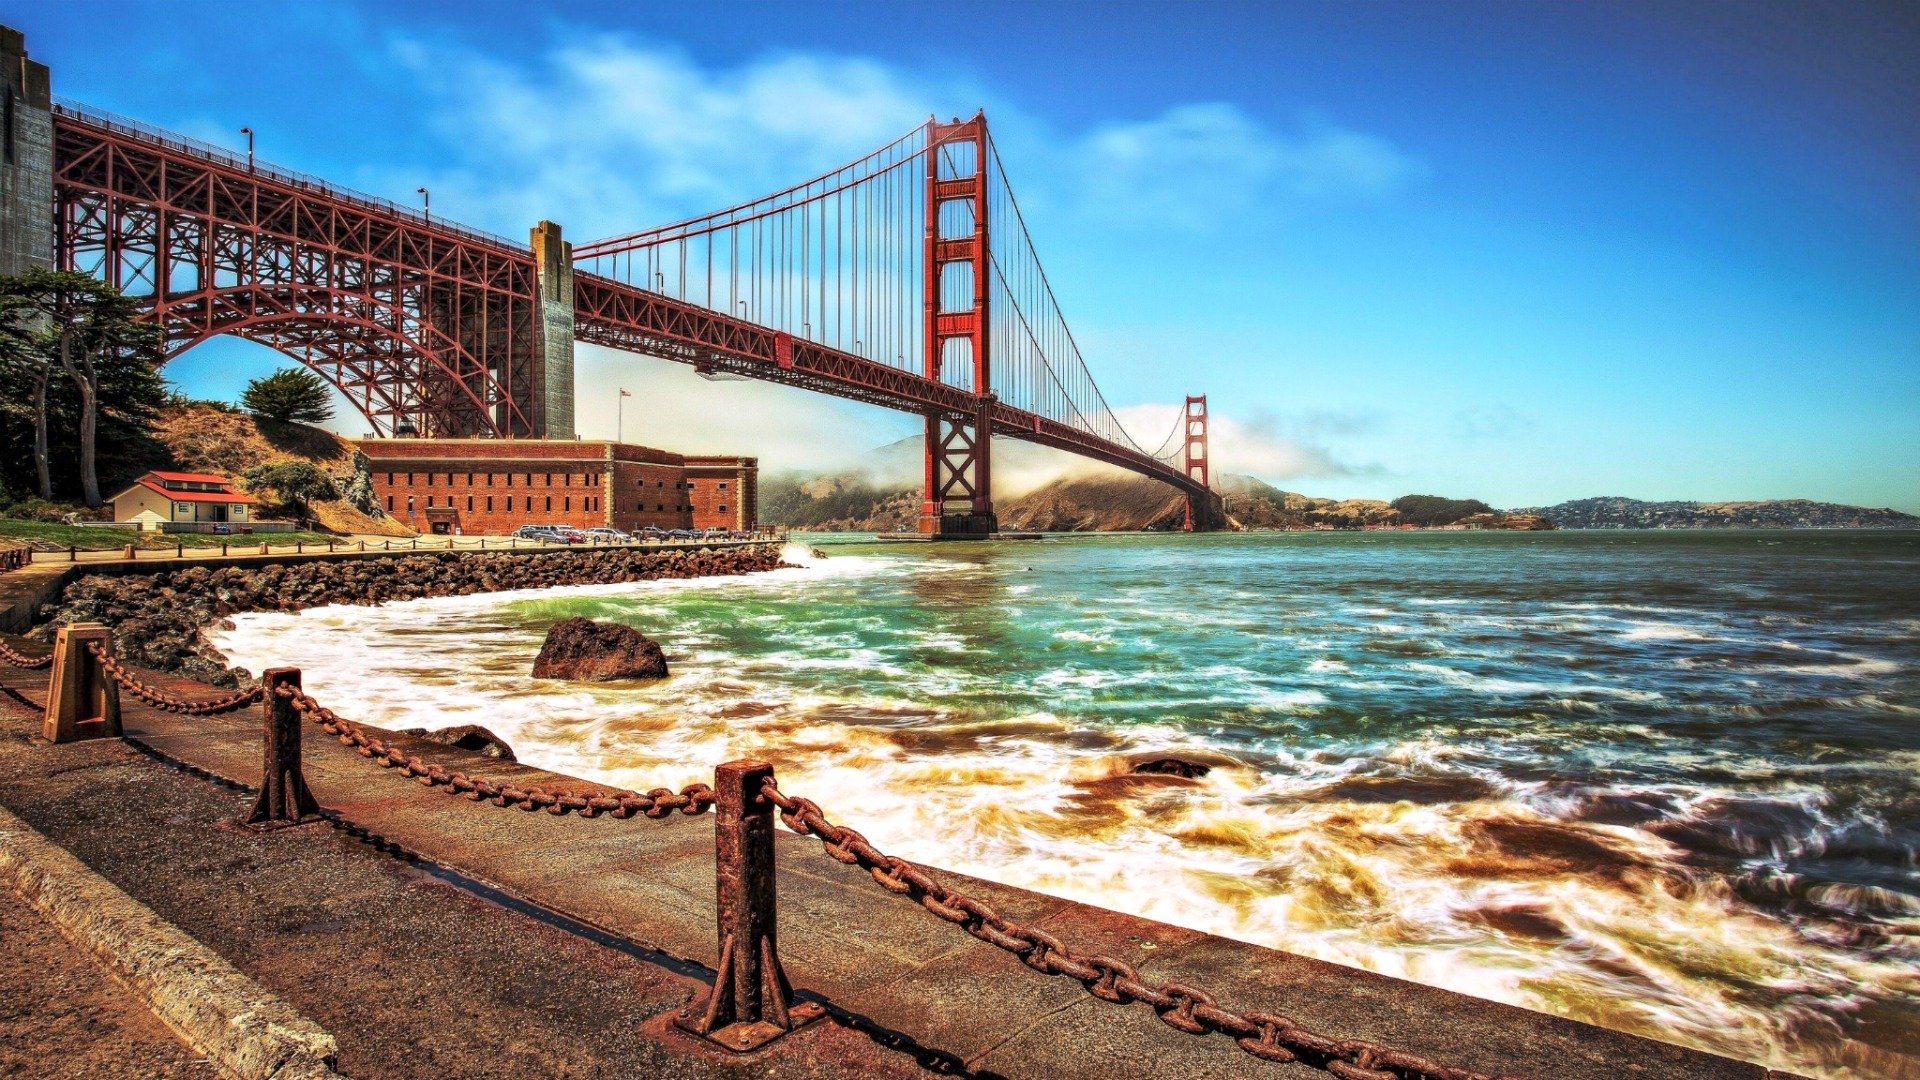 42+] HD Wallpaper Golden Gate Bridge - WallpaperSafari